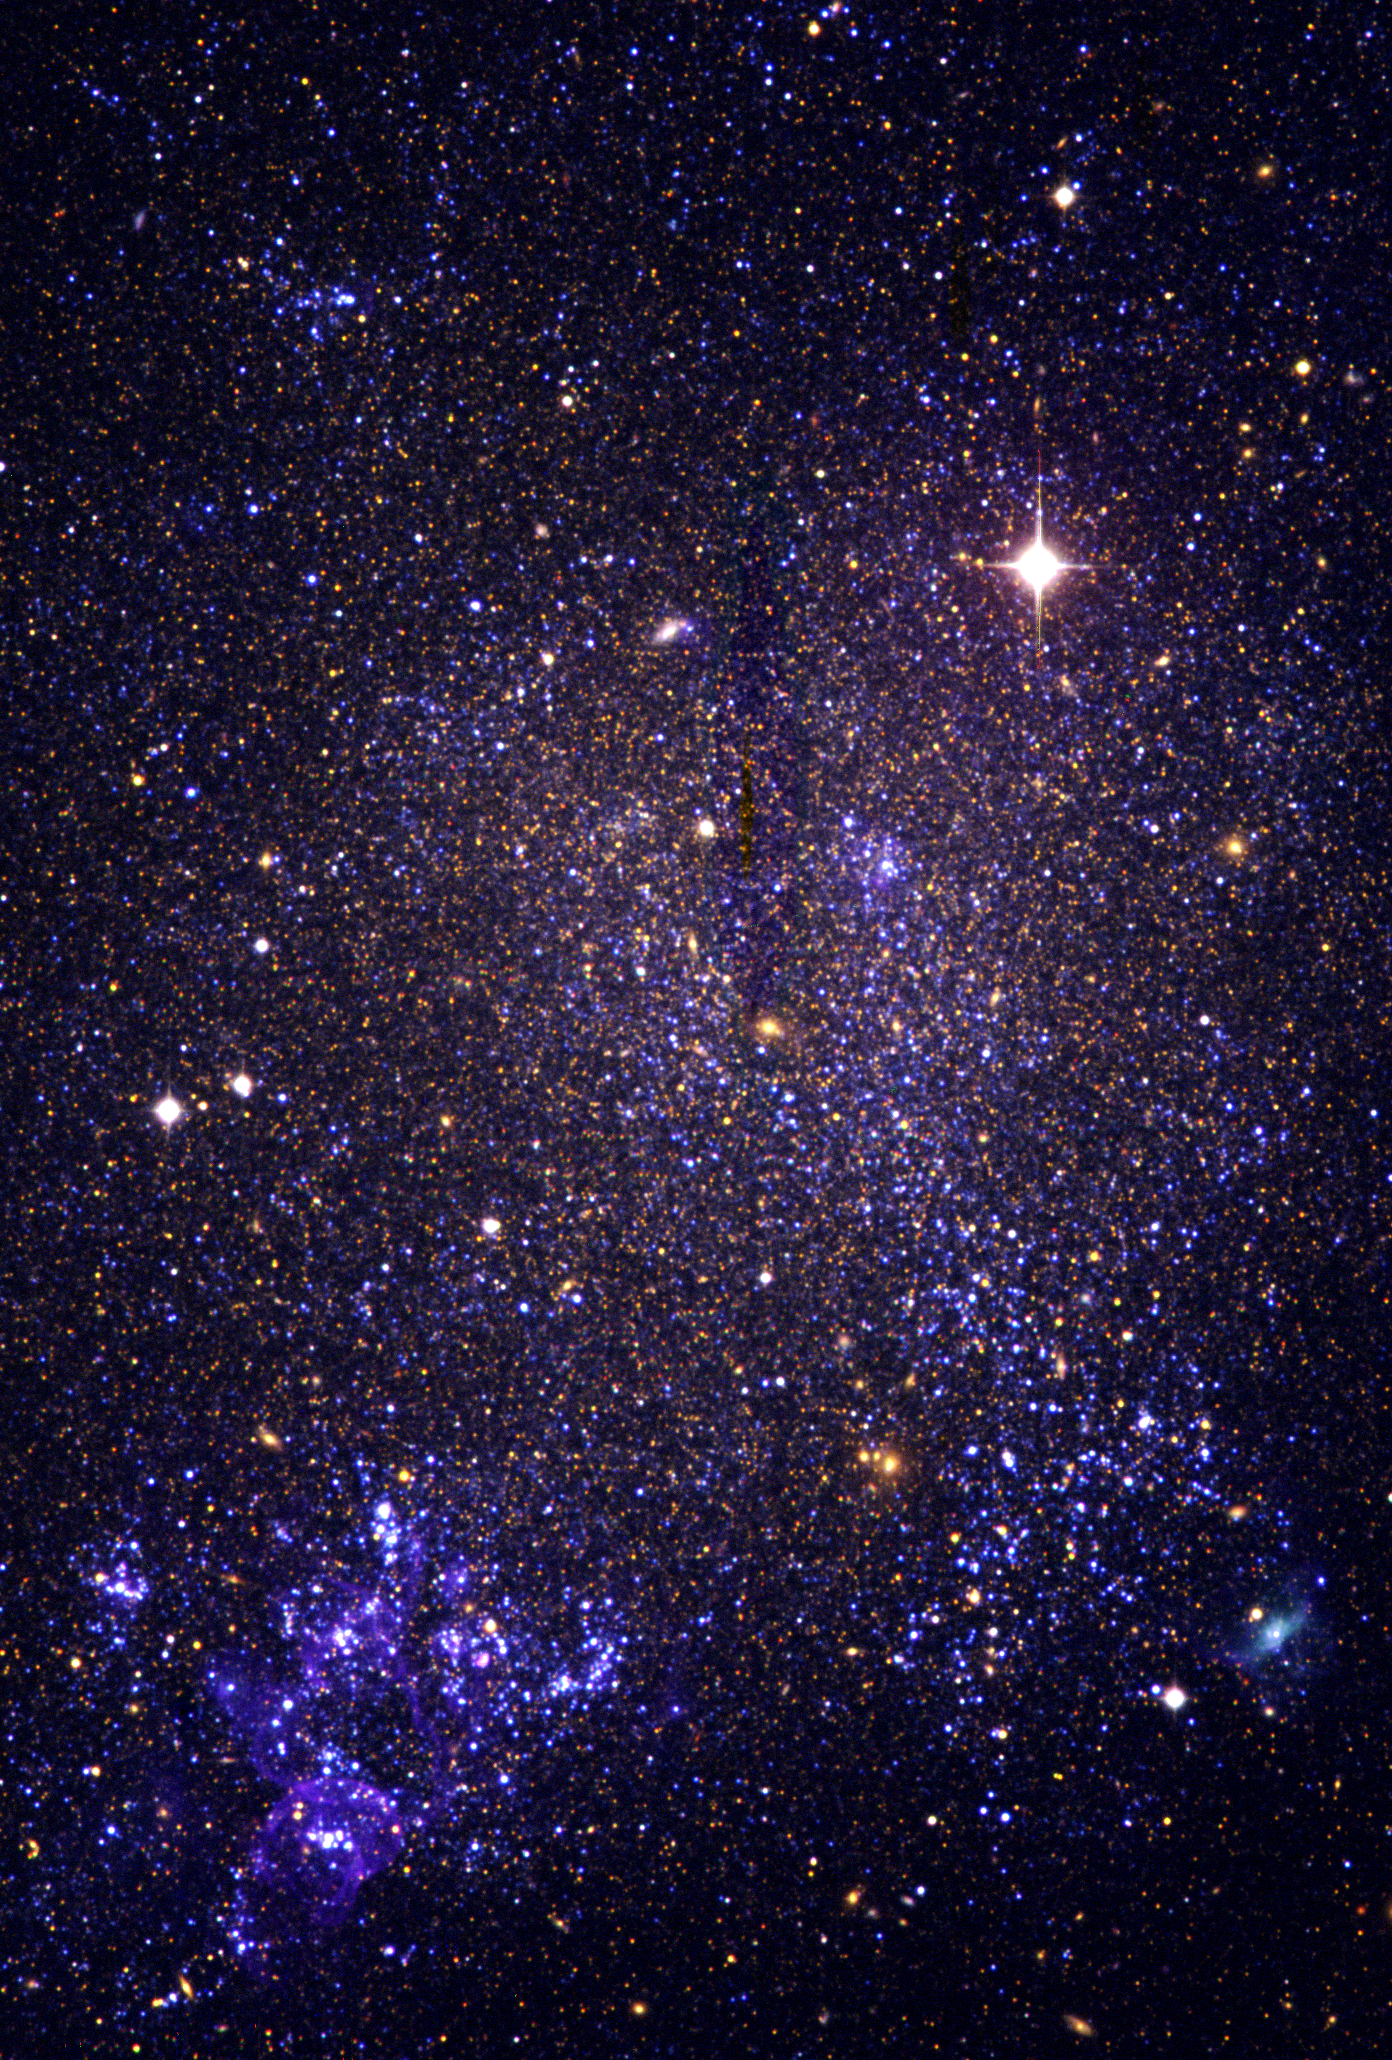 La galaxia IC 1613 observada con la Wide Field Camera del Isaac Newton Telescope en el Roque de los Muchachos. Puede apreciarse la zona de intensa formación estelar en la esquina inferior izquierda. En esa zona se encuentra la candidata a LBV V39 cuyo espectro observado con VLT-VIMOS se muestra con los característicos perfiles P-Cygni (emisión roja y absorción azul). Actualmente hemos comenzado a observar espectros de IC 1613 con GTC, aunque todavía a una resolución algo menor.